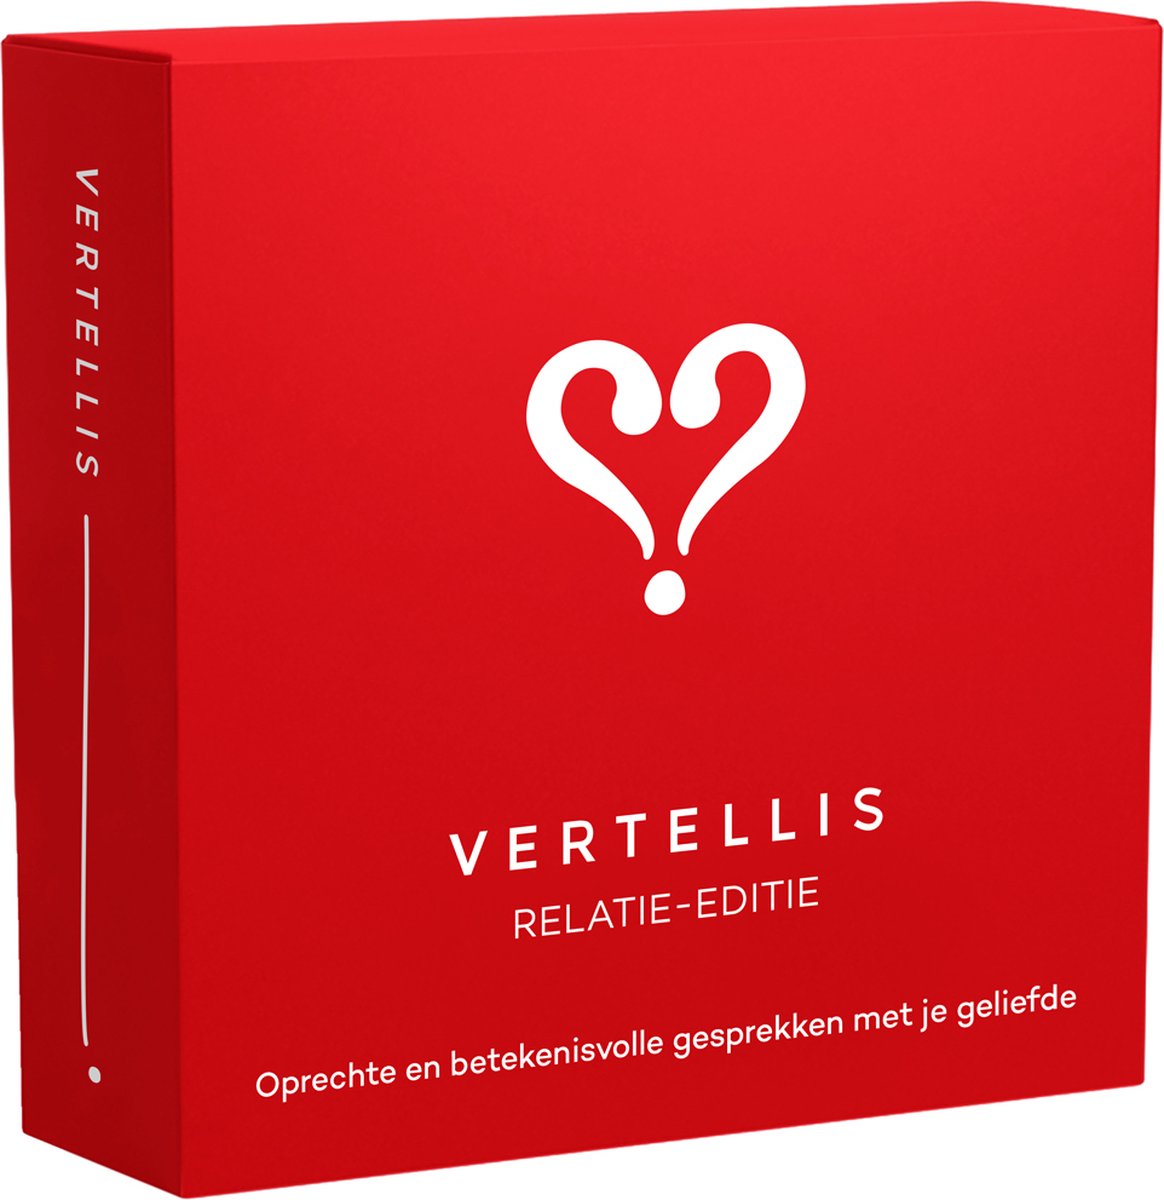 Vragenspel voor je relatie - De Vertellis Relatie-editie - Voor Alle Liefdesrelaties, Ultiem relatie cadeau, Gesprekskaarten, vakantie spelletjes voor onderweg - volwassenen - Gespreksstarter - Vertellis